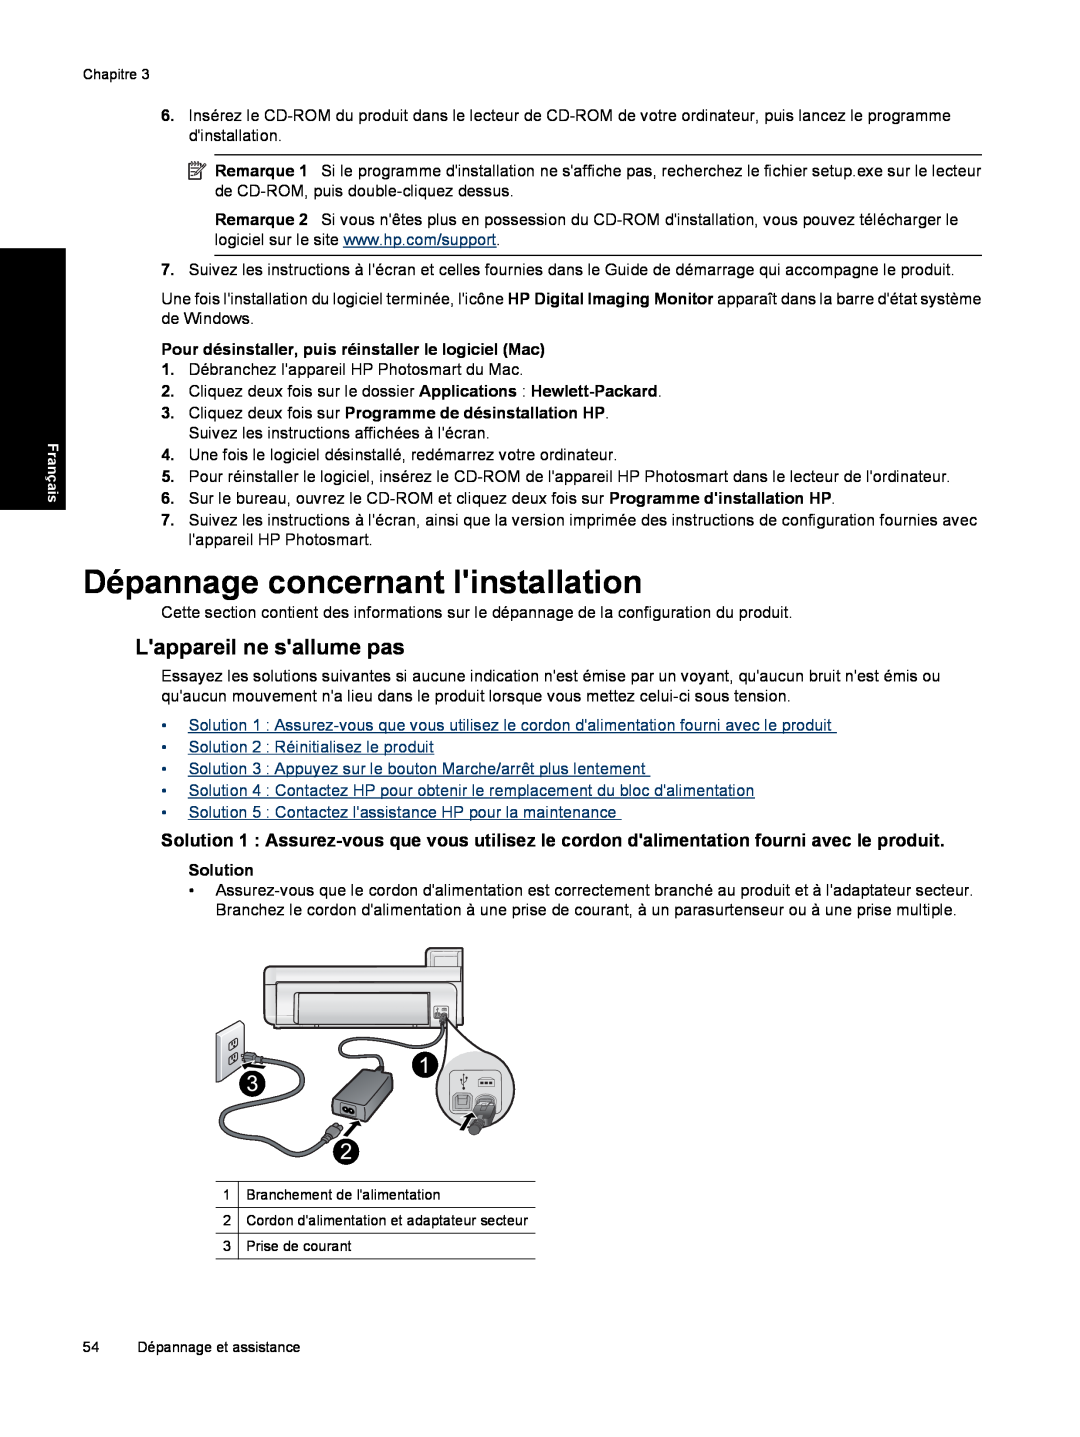 HP B8550 Dépannage concernant linstallation, Lappareil ne sallume pas, Pour désinstaller, puis réinstaller le logiciel Mac 